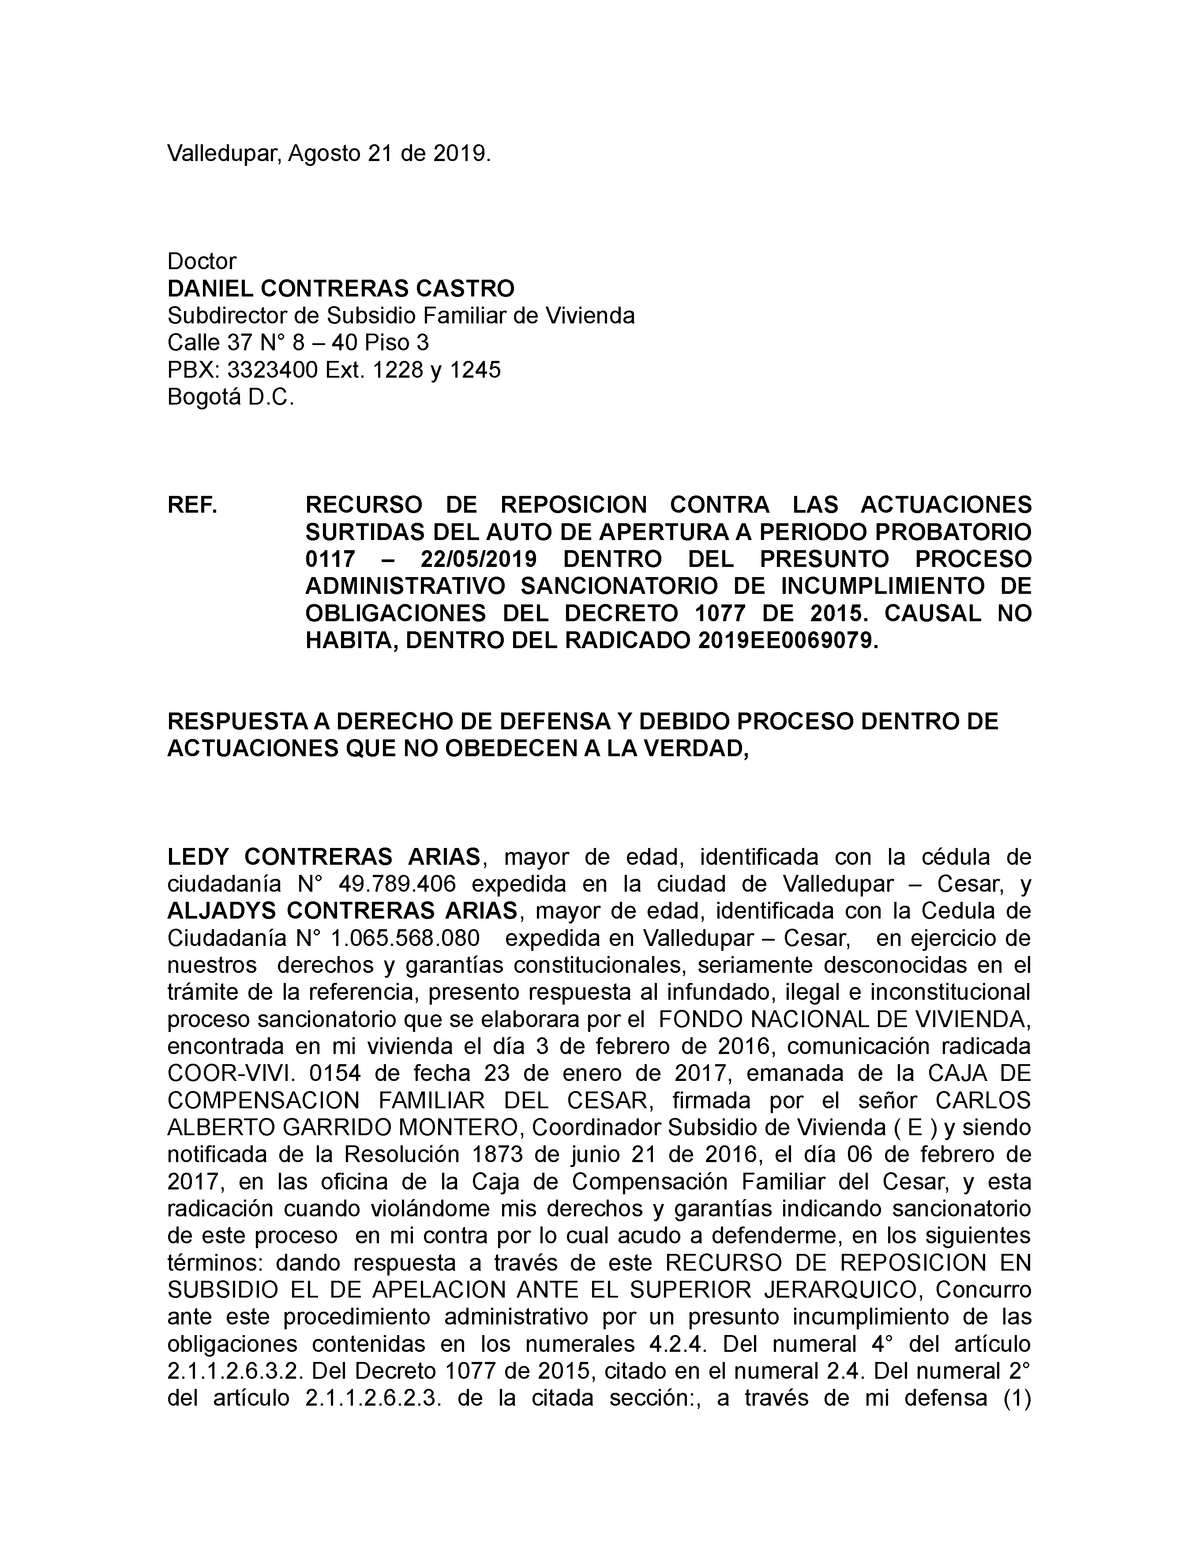 Respuesta Recurso DE Reposicion LEDY Contreras Arias - Valledupar, Agosto  21 de 2019. Doctor DANIEL - Studocu